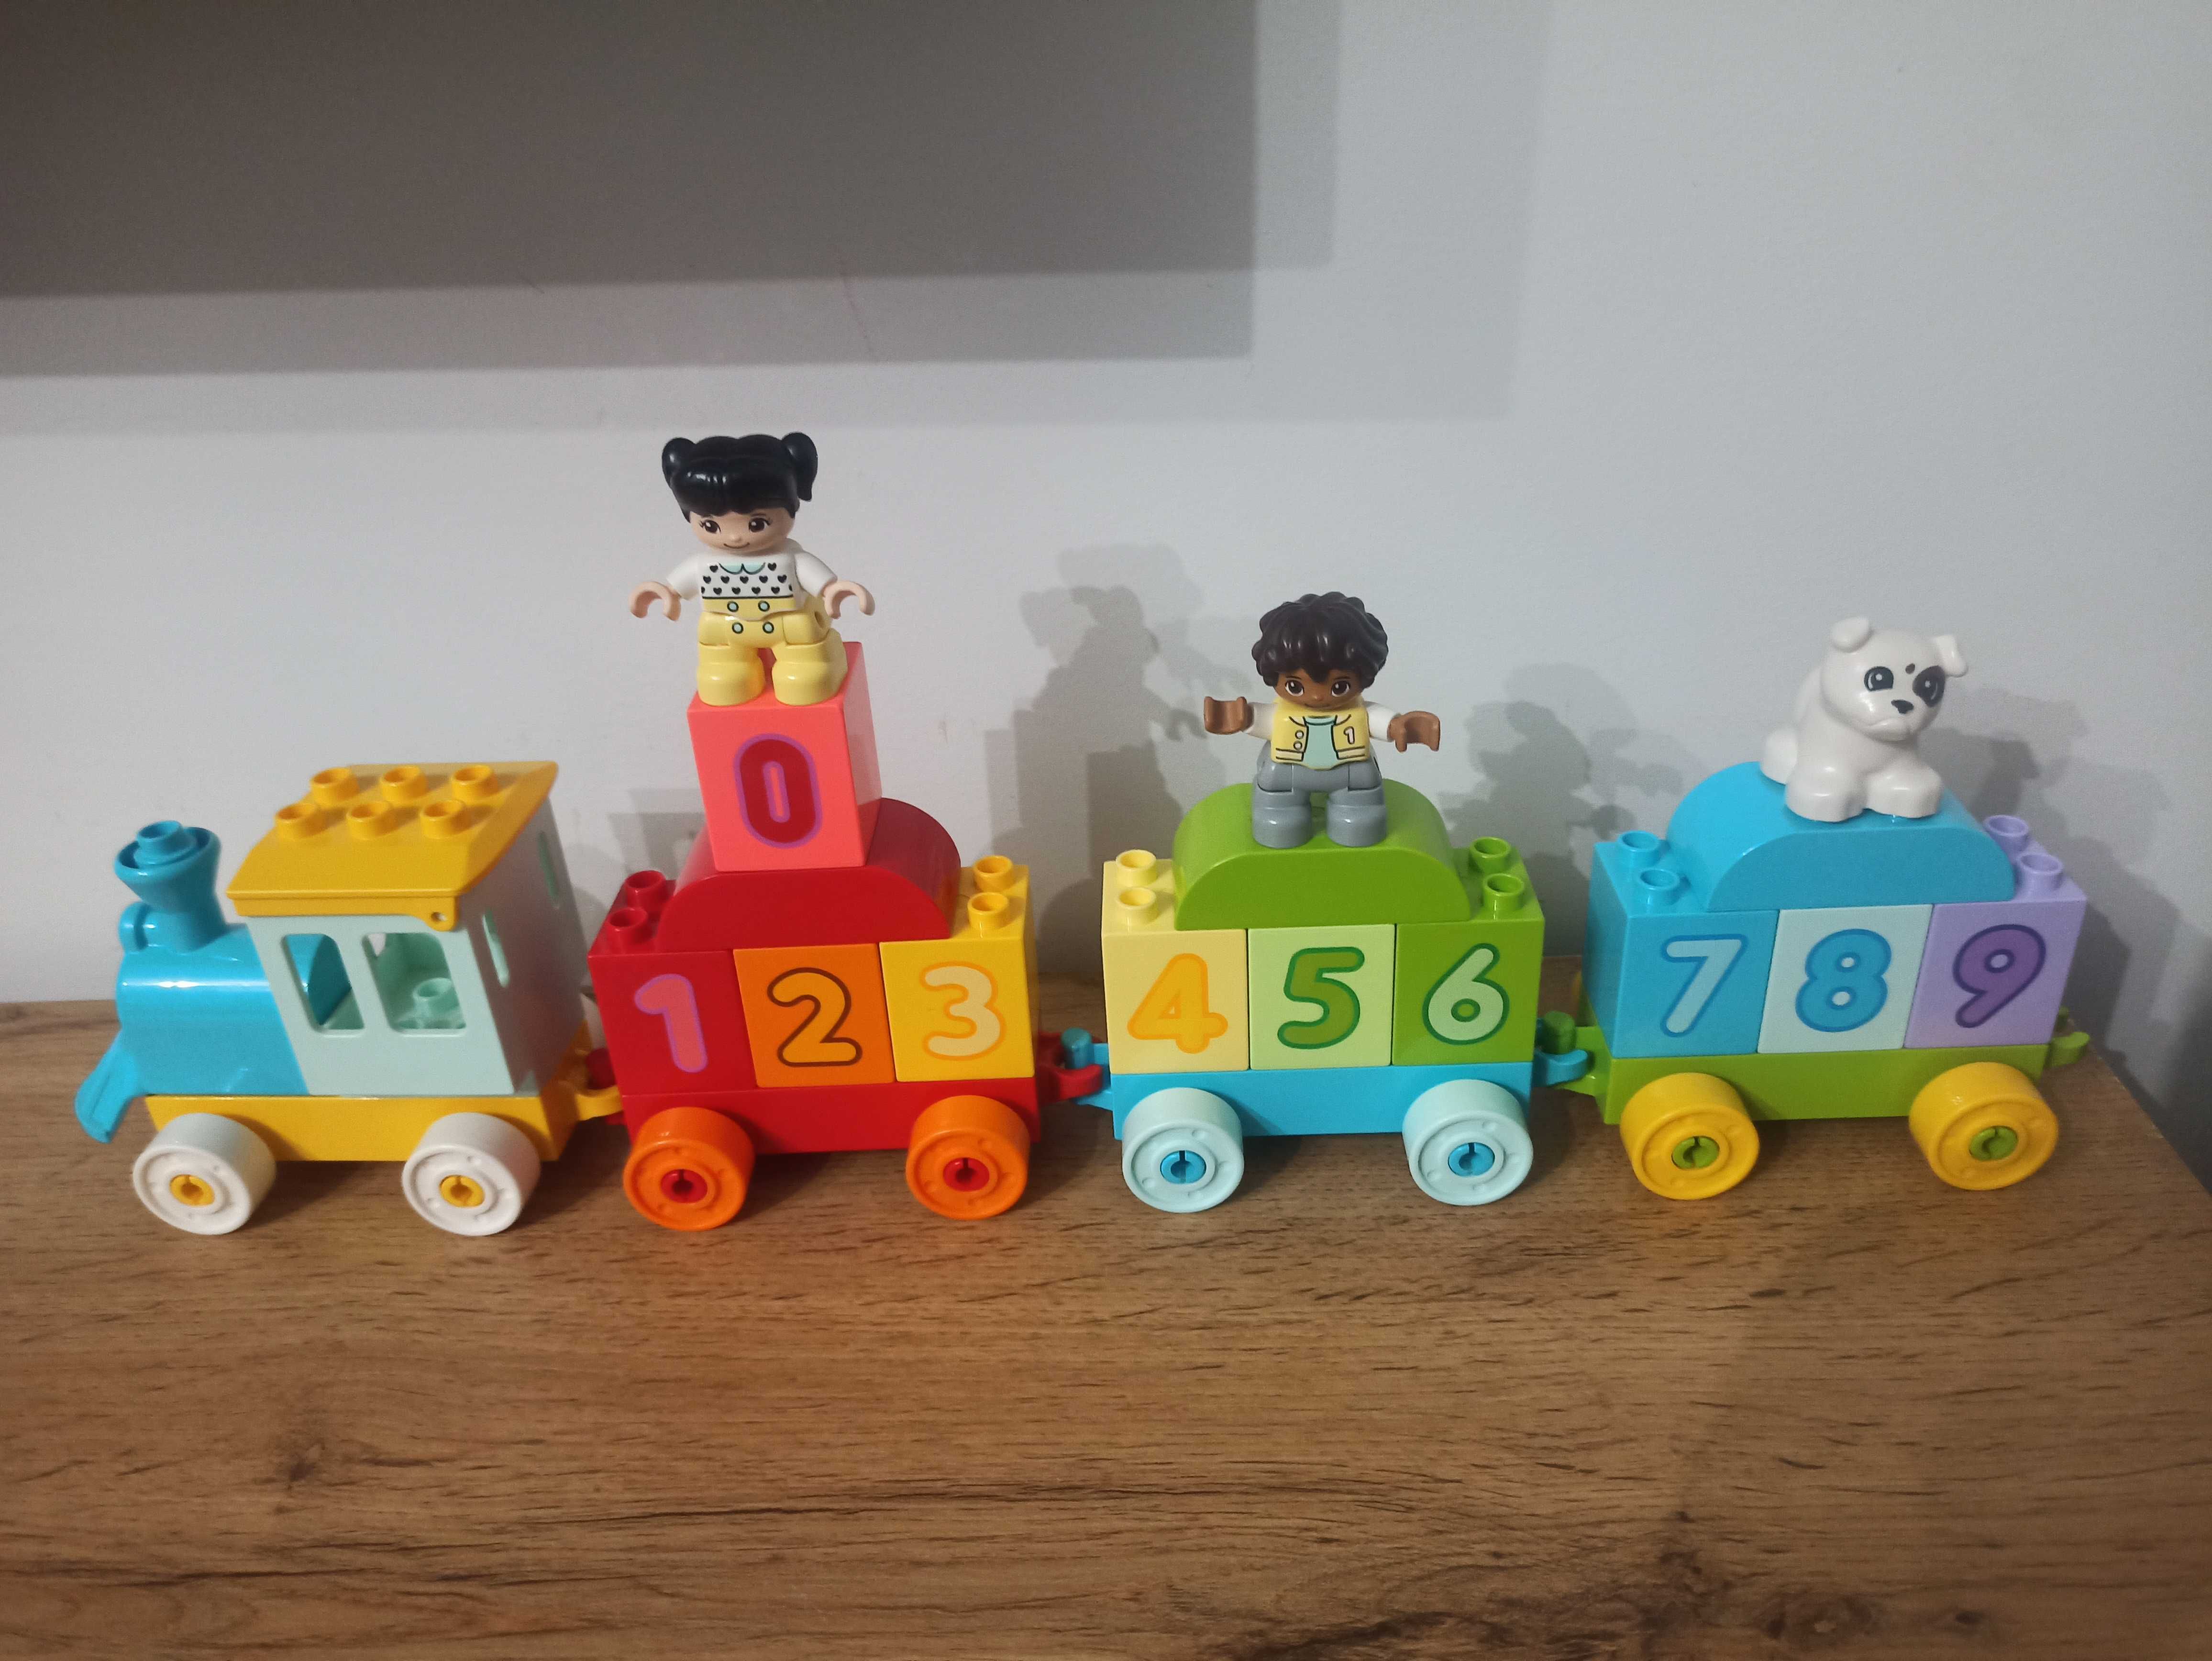 Lego Duplo Pociąg z cyferkami